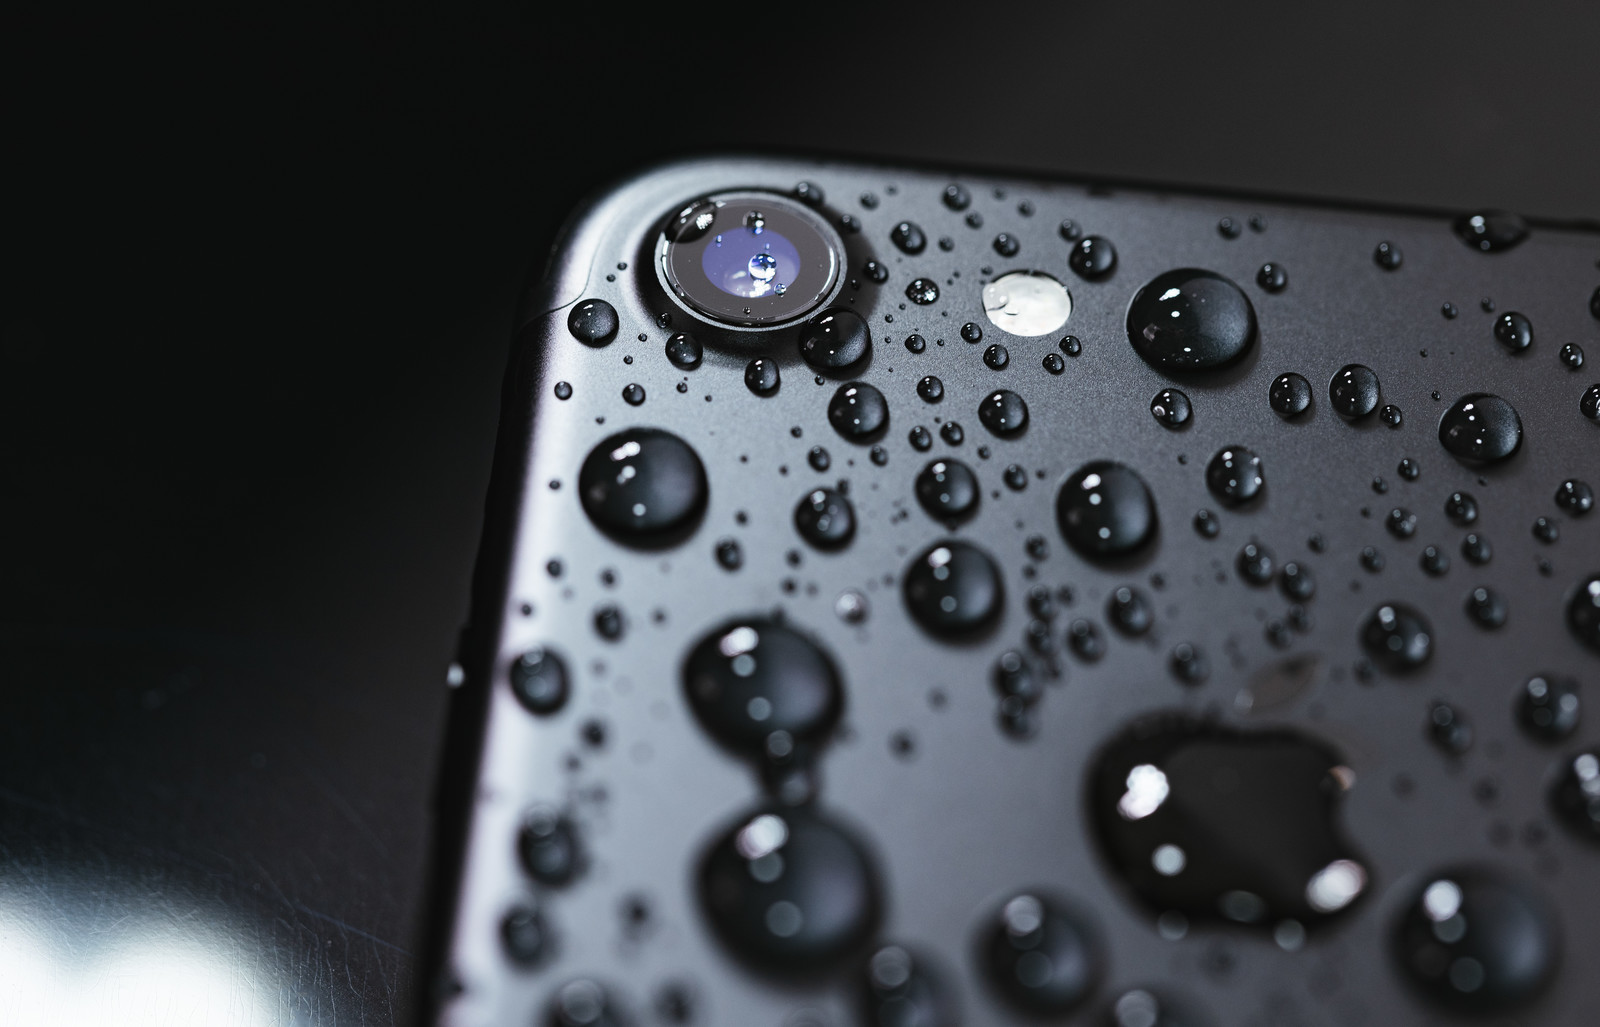 【注意】iPhoneの水没は、Applecare+で保証対象外（有償修理）です((((；ﾟДﾟ))))　尼崎・伊丹・川西のiPhone修理専門店スマートクール